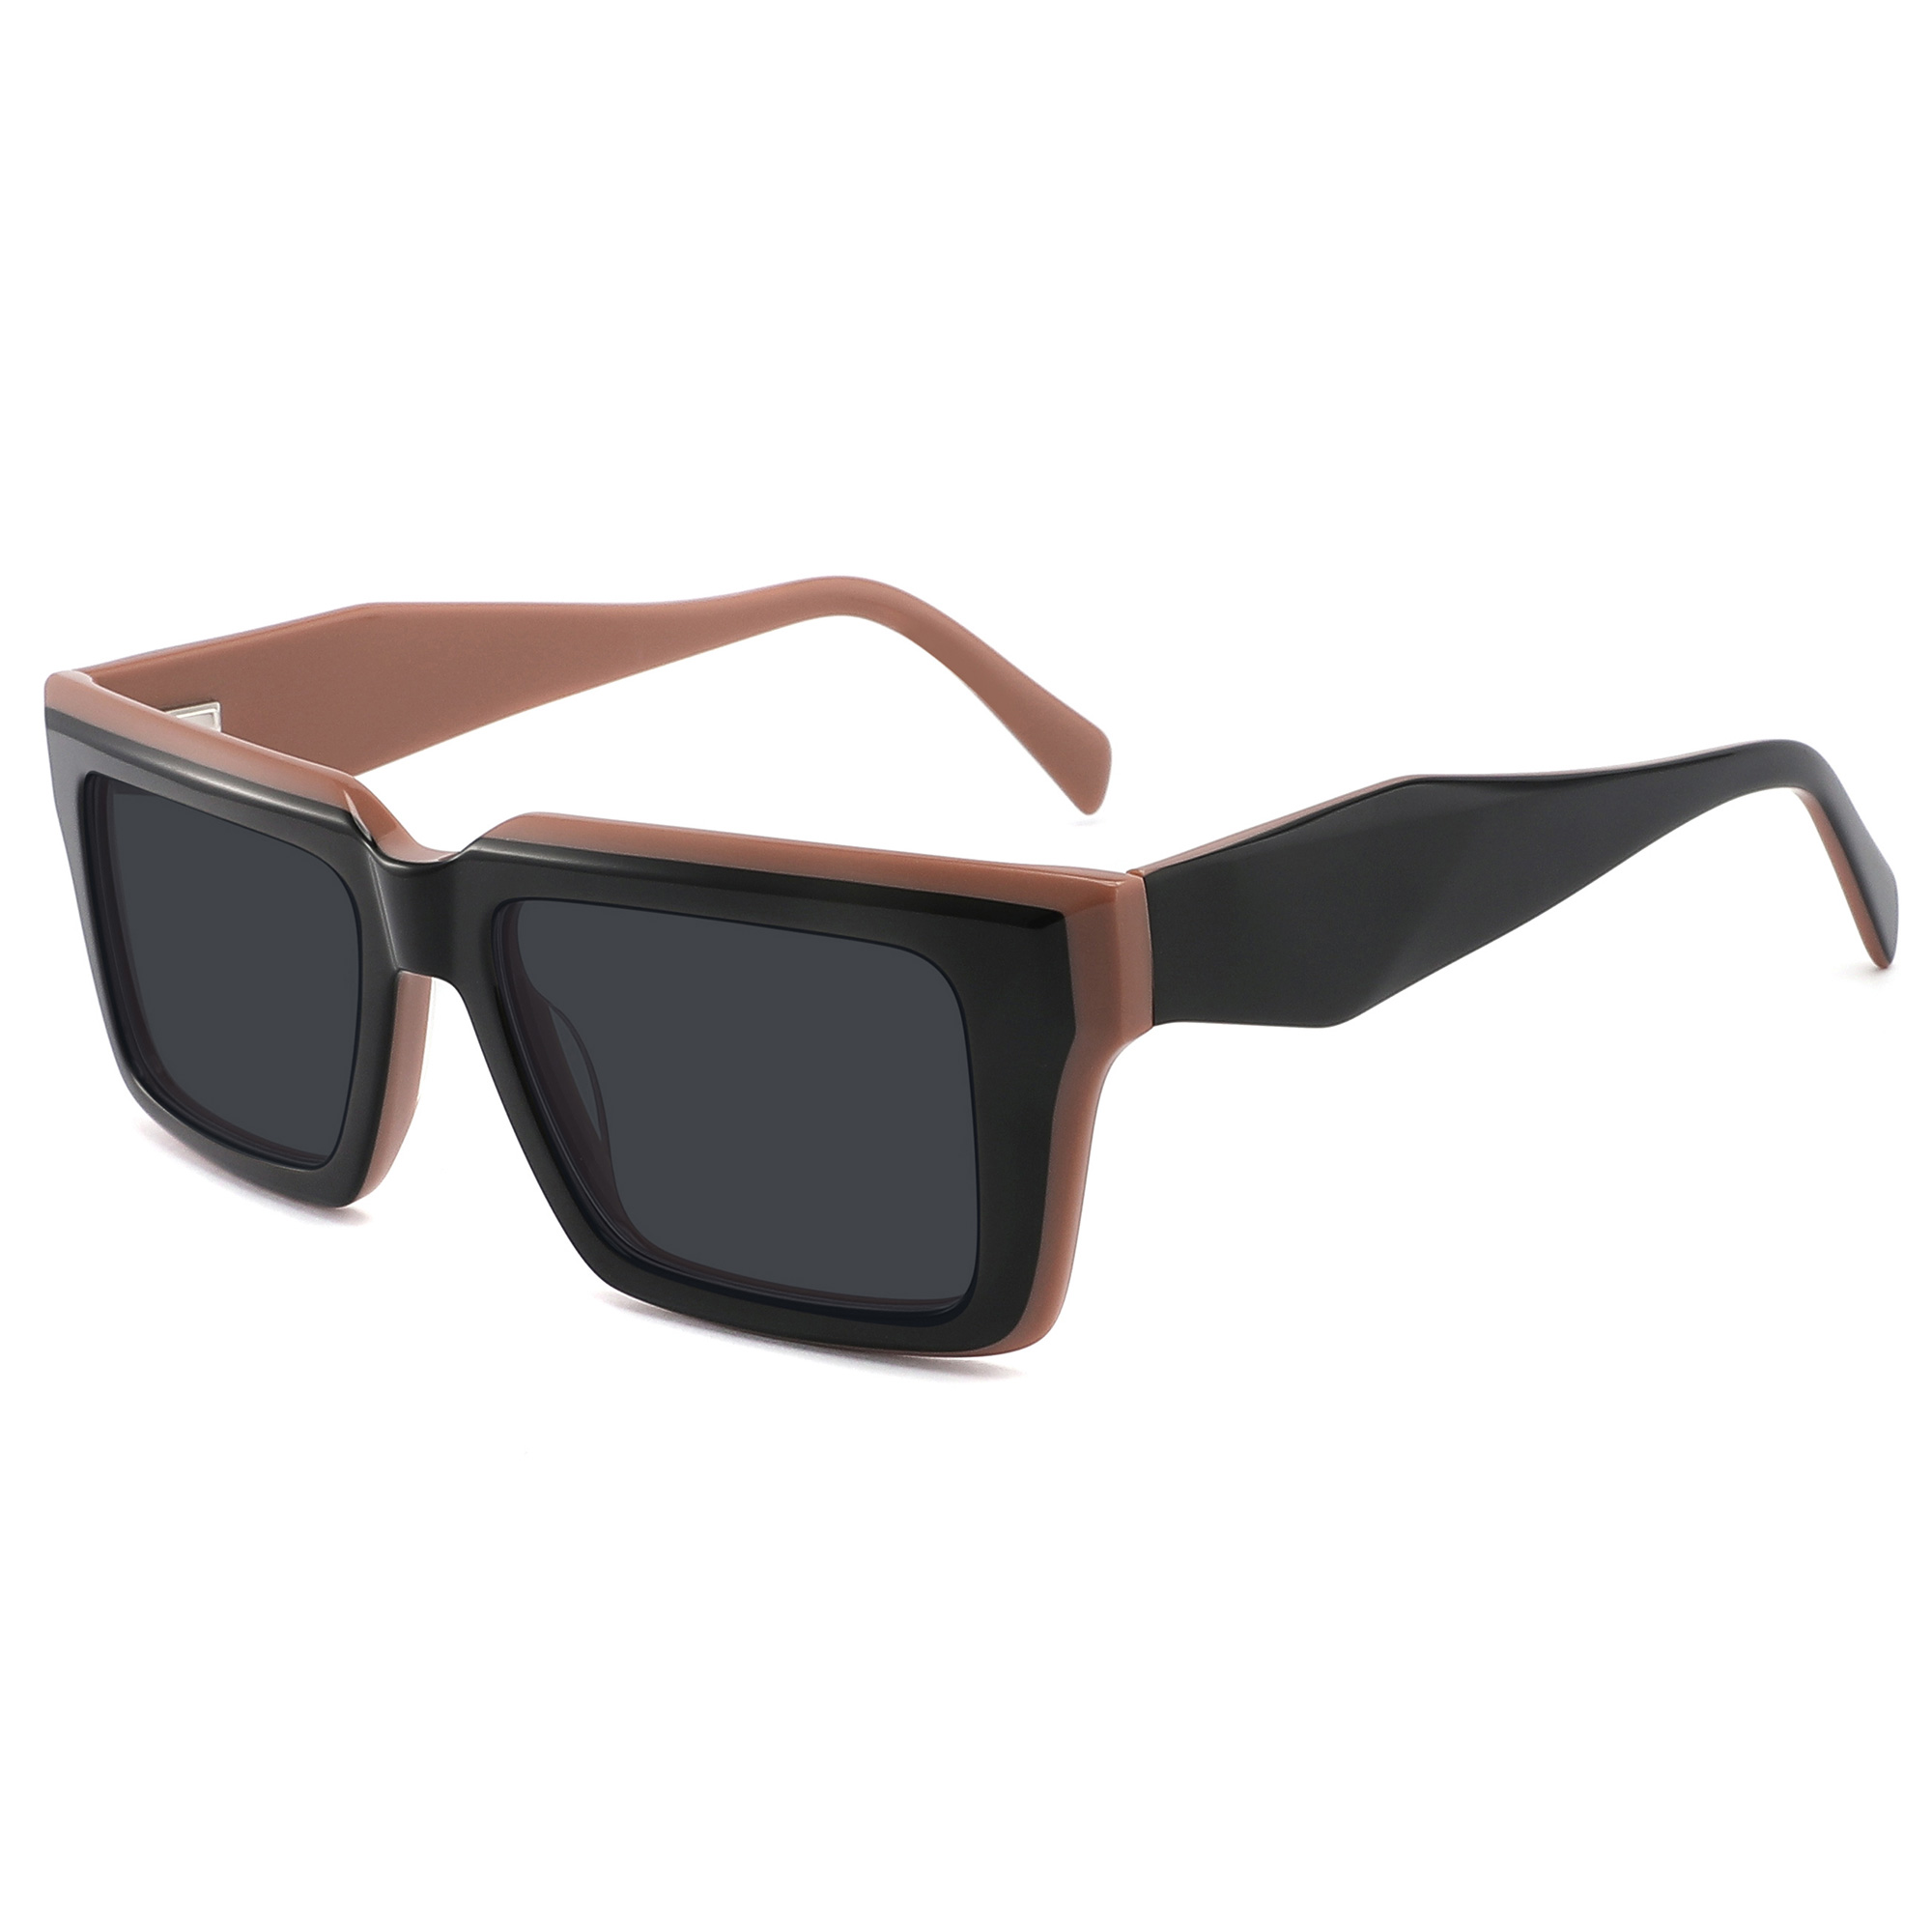 Gafas de sol de acetato de moda para mujer, venta al por mayor, lentes TAC para viajes al aire libre, gafas de sol masculinas con montura negra polígono elegante